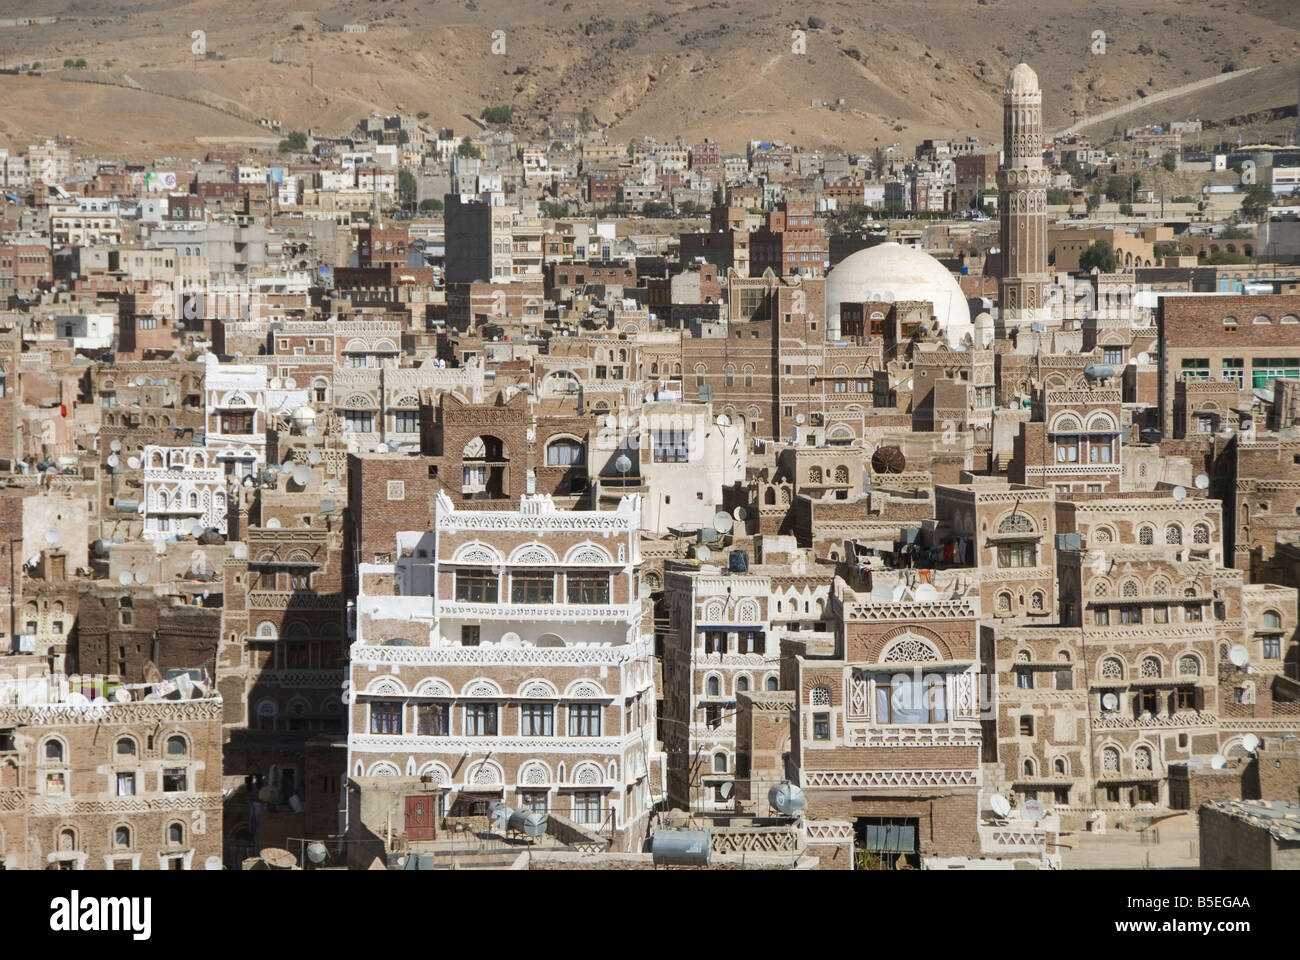 L'architecture de brique traditionnelle ornée de maisons hautes, vieille ville, à Sana'a, Site du patrimoine mondial de l'UNESCO, au Yémen Banque D'Images